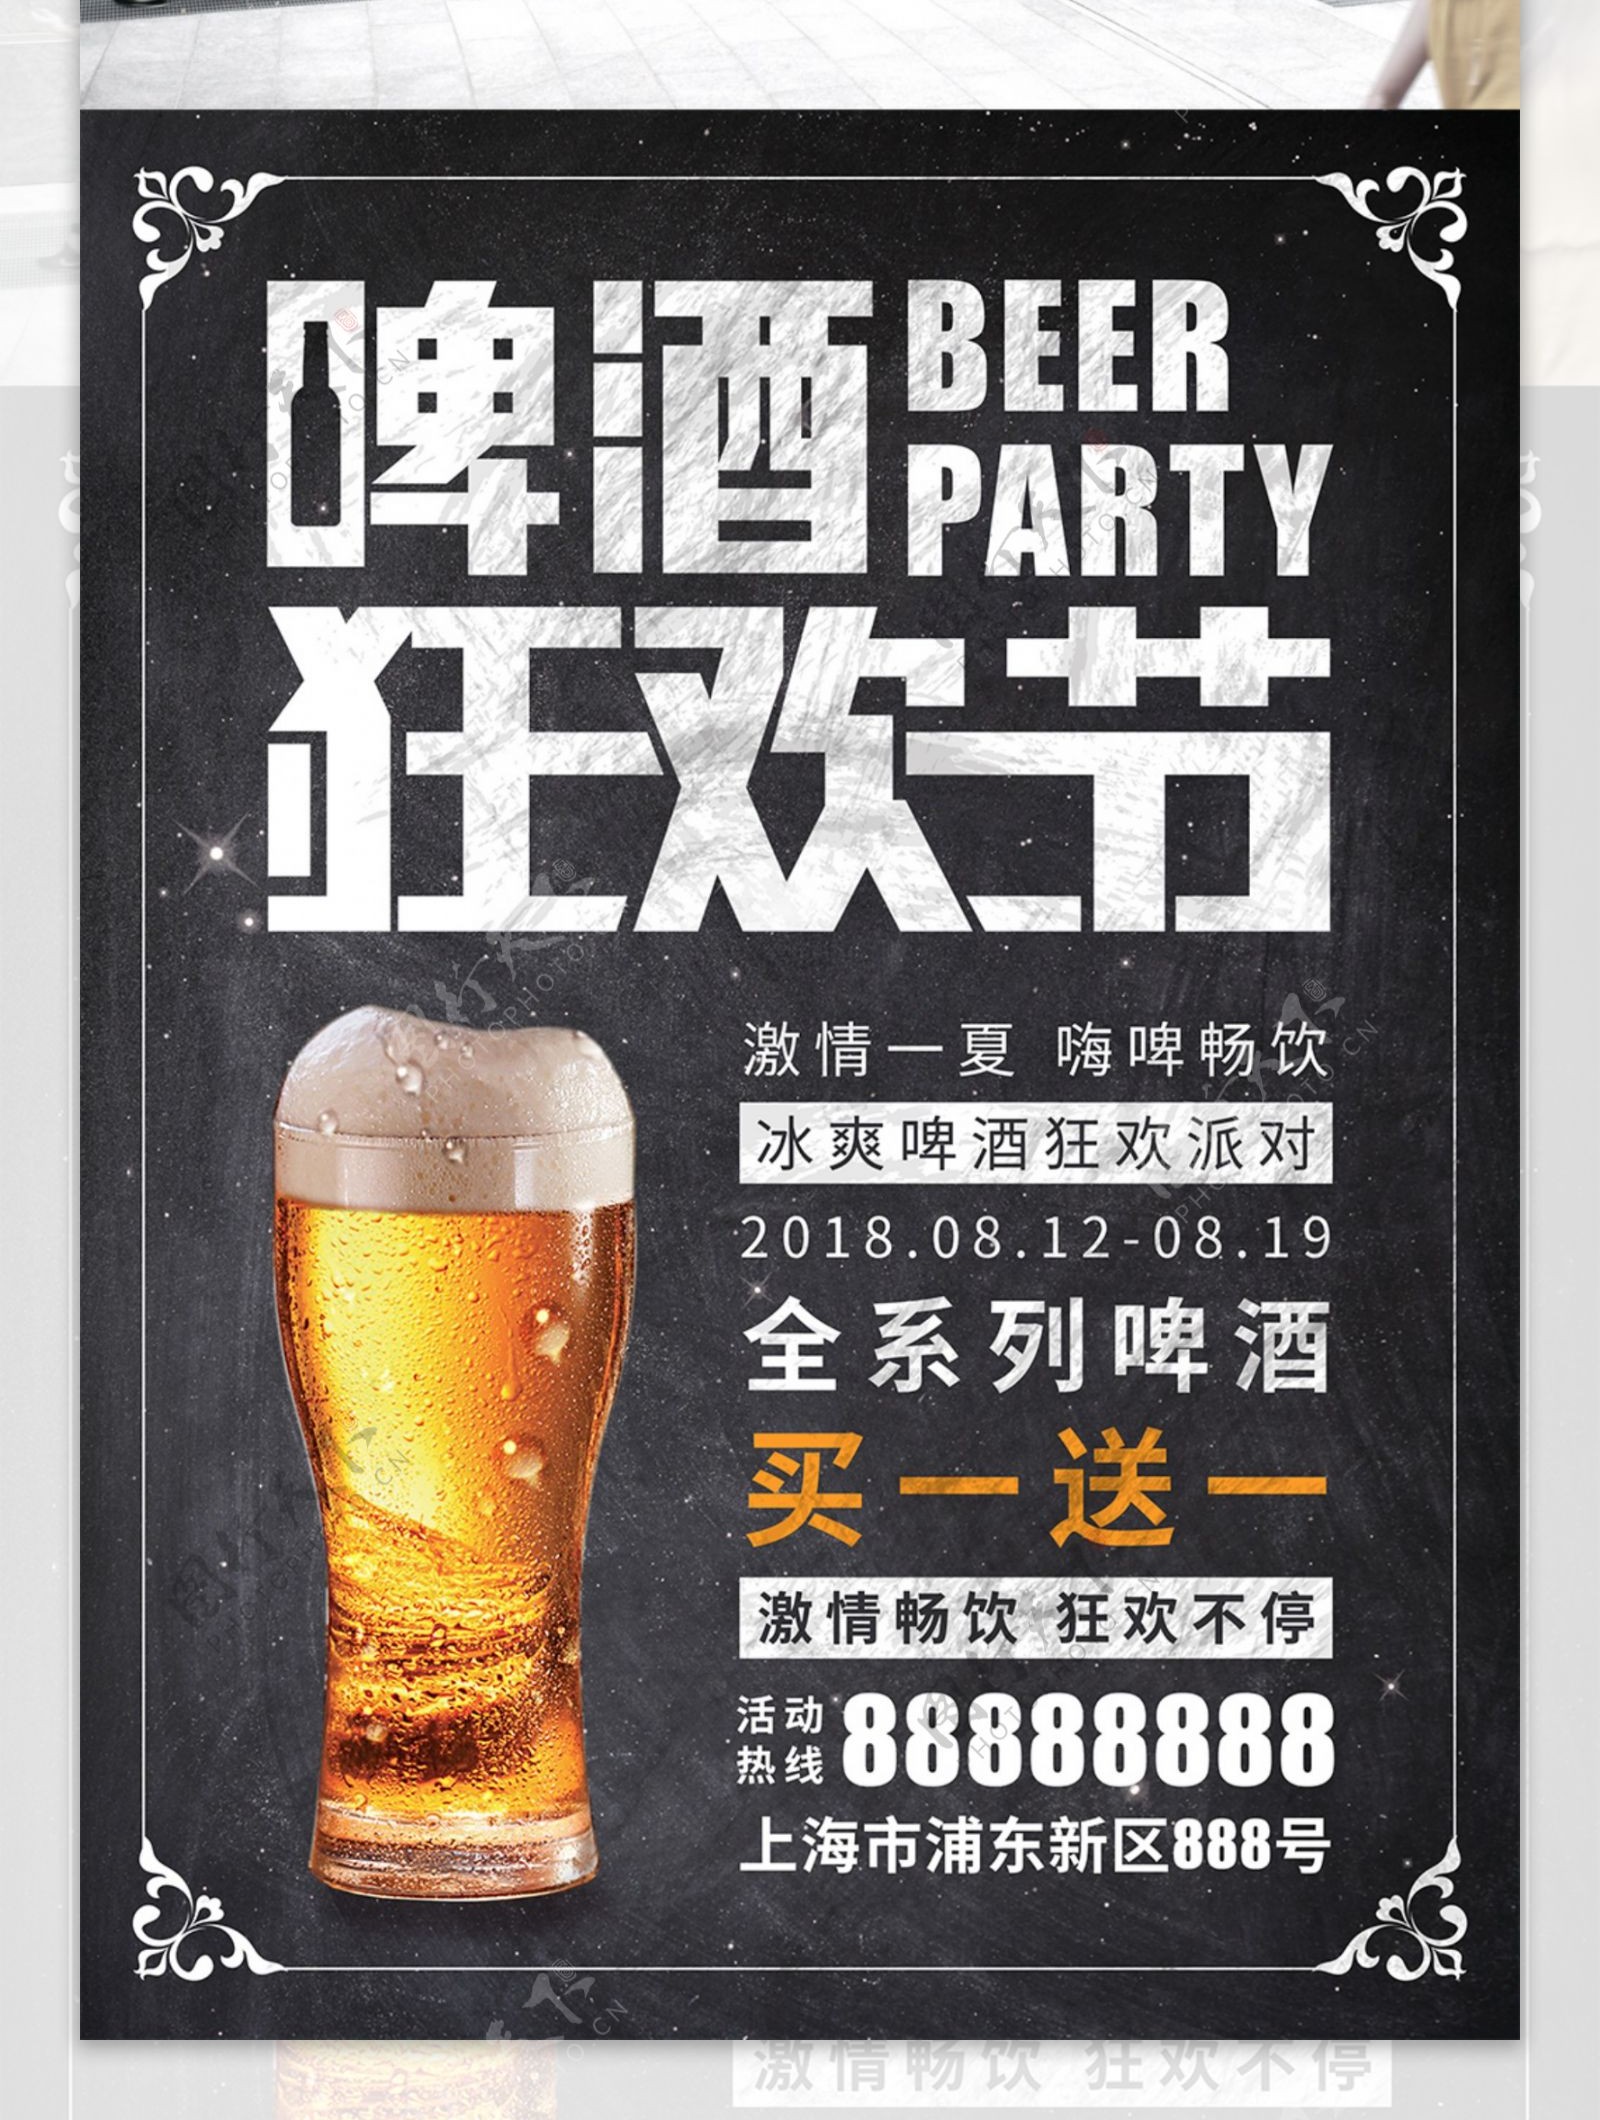 简约黑板风啤酒狂欢节冰爽啤酒狂欢派对海报